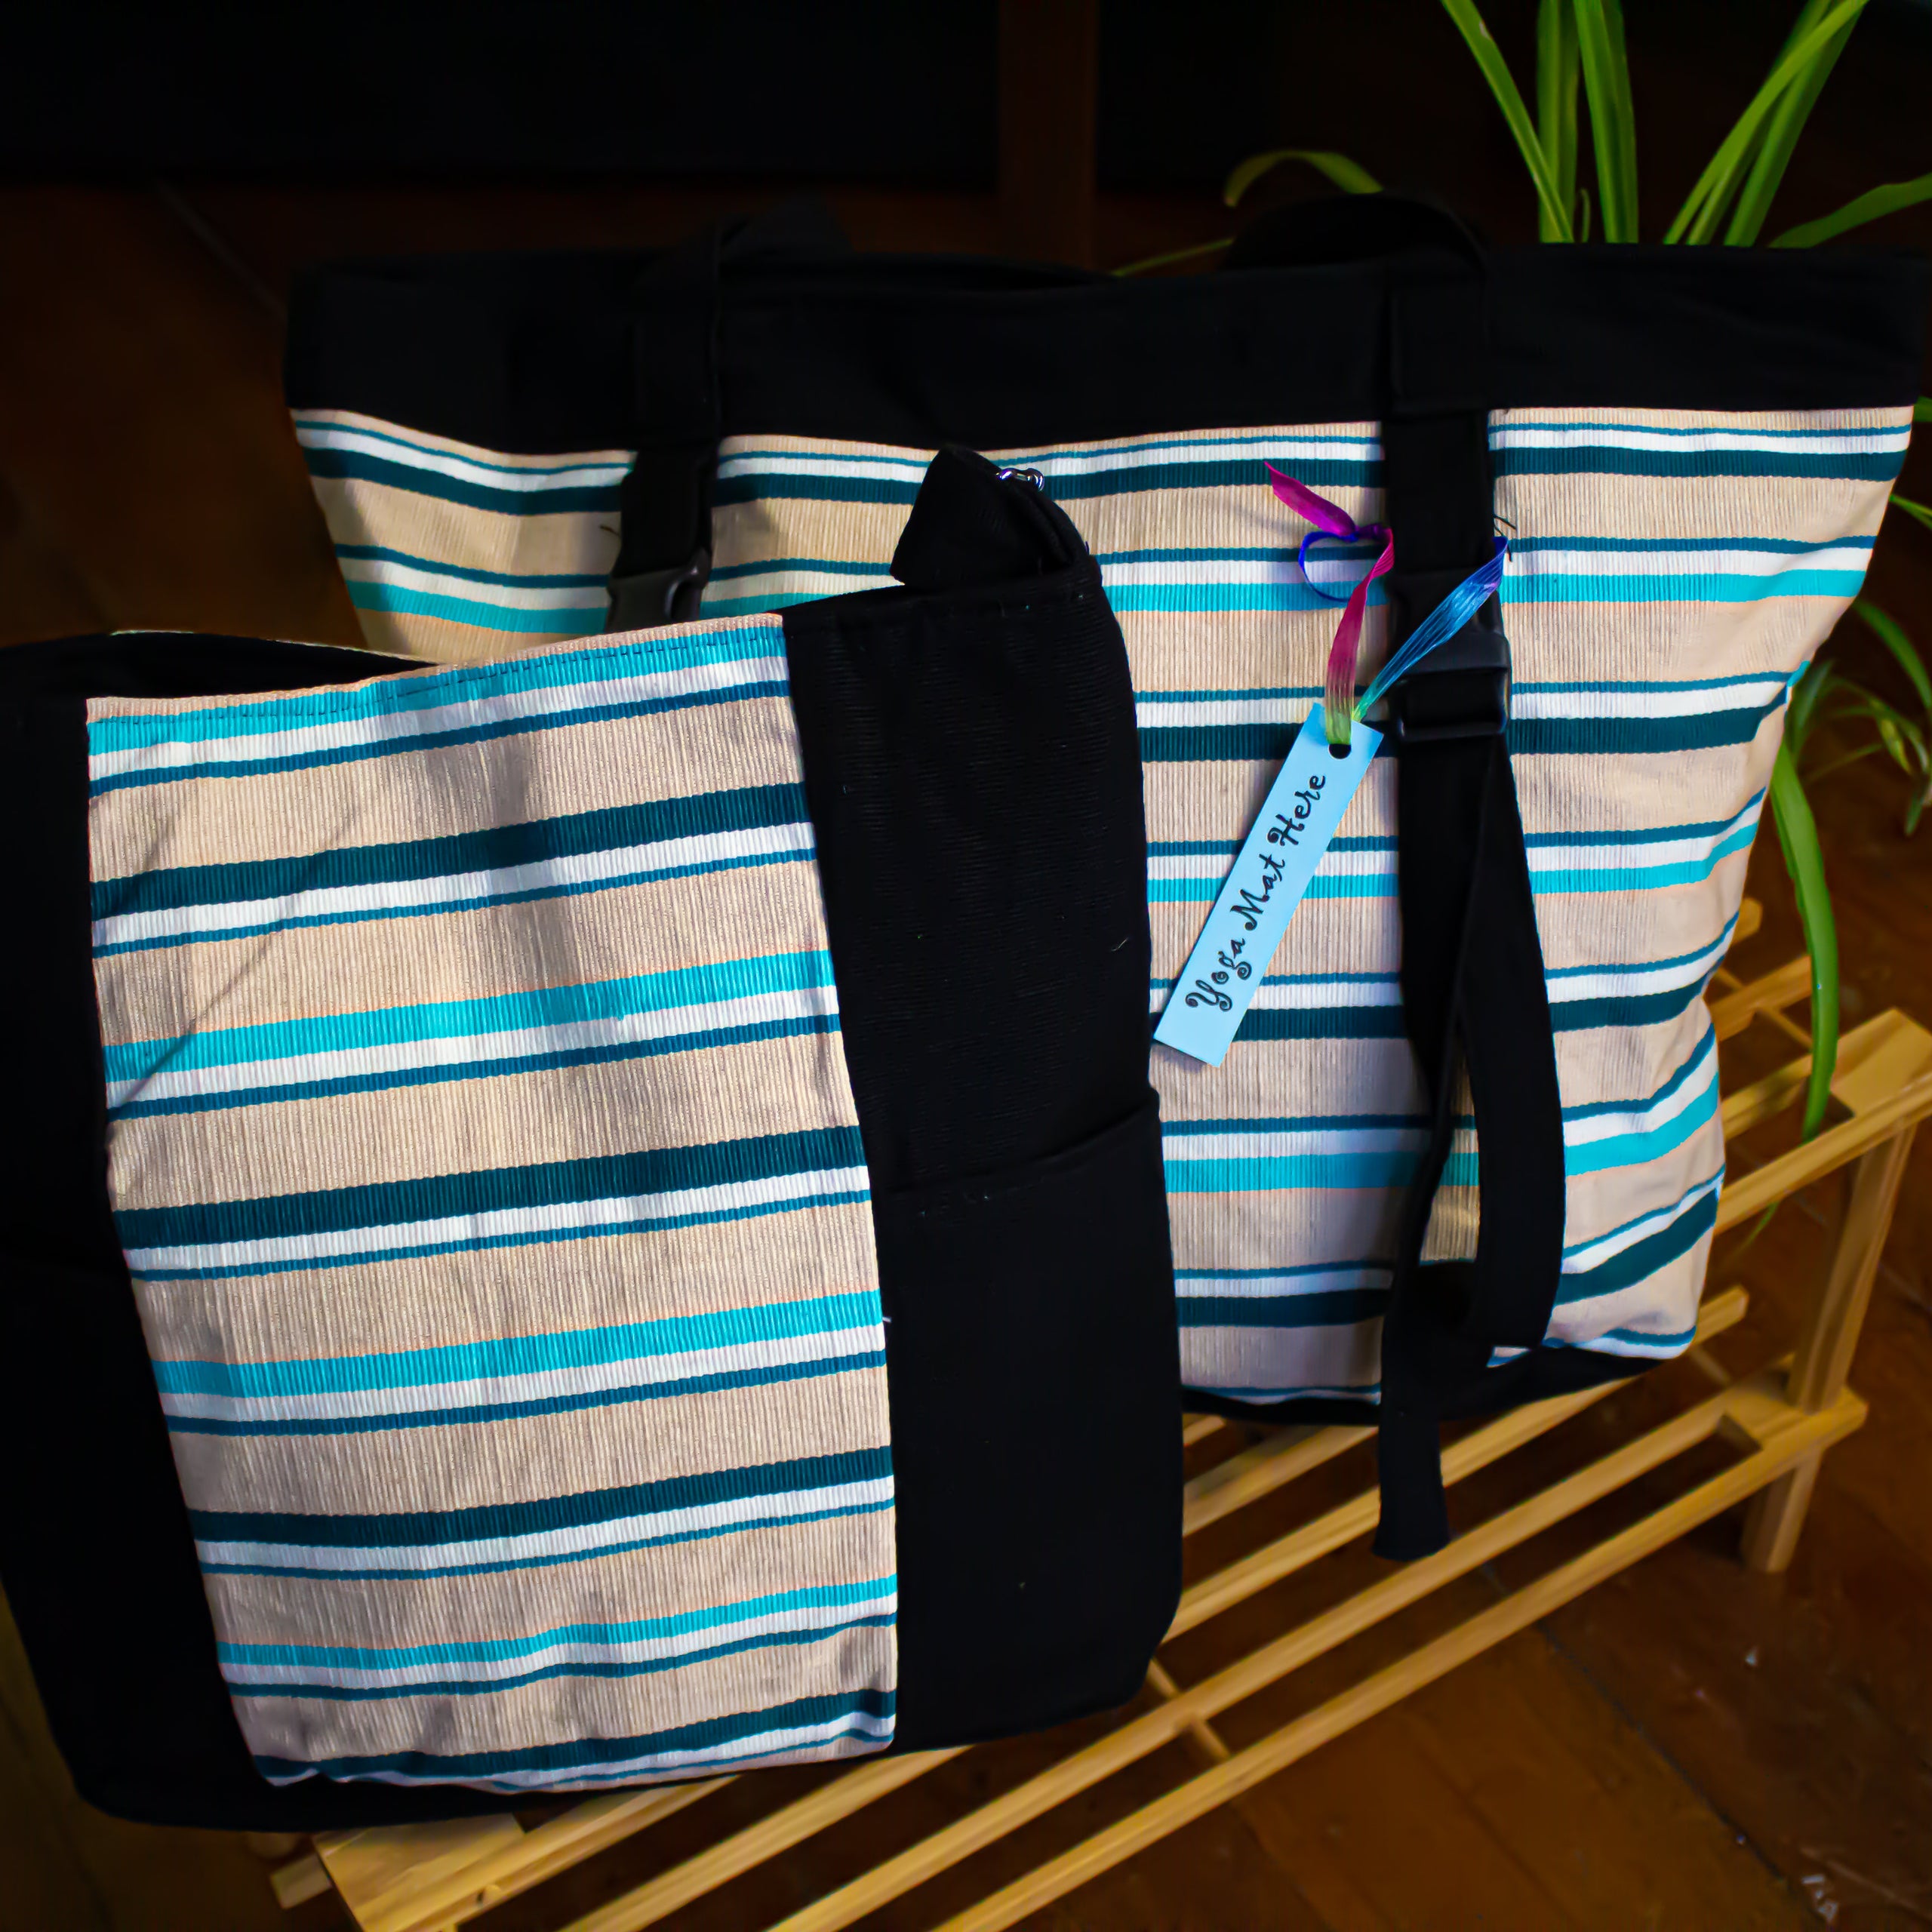 Yoga Bag in Tan Stripes - Fair Trade Guatemalan Bags